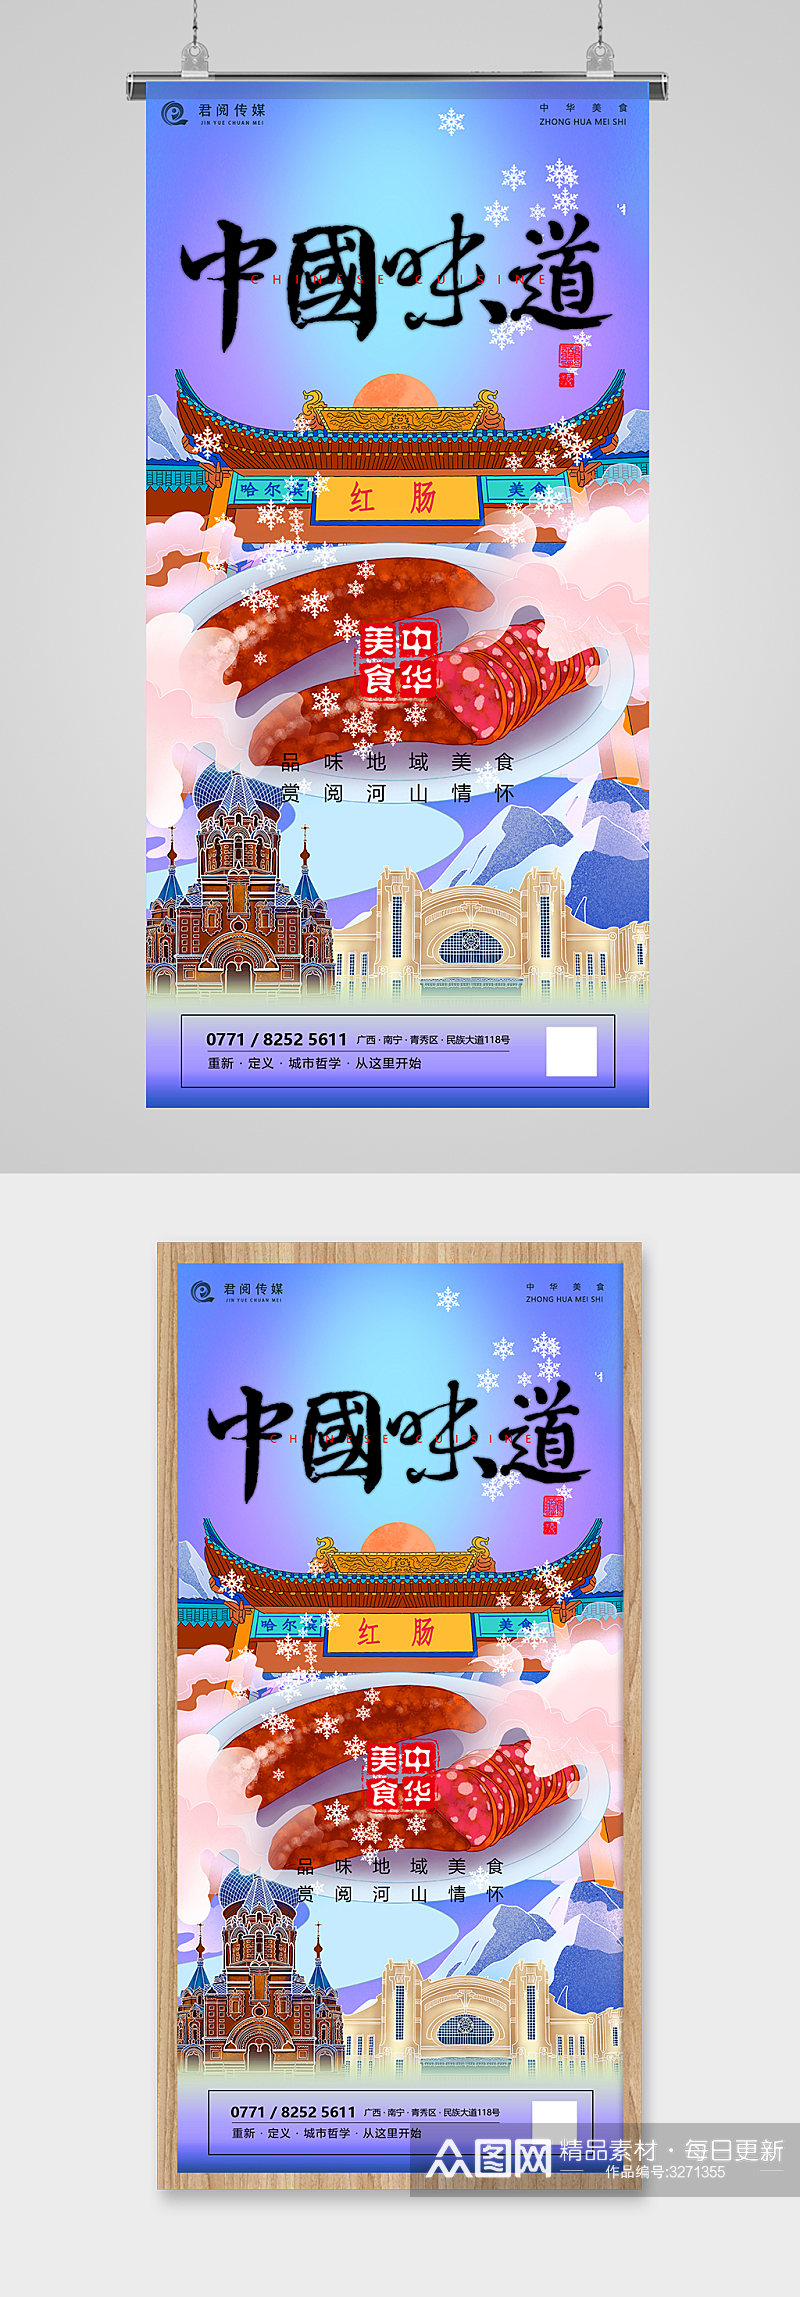 中国美食哈尔滨红肠国潮插画海报素材